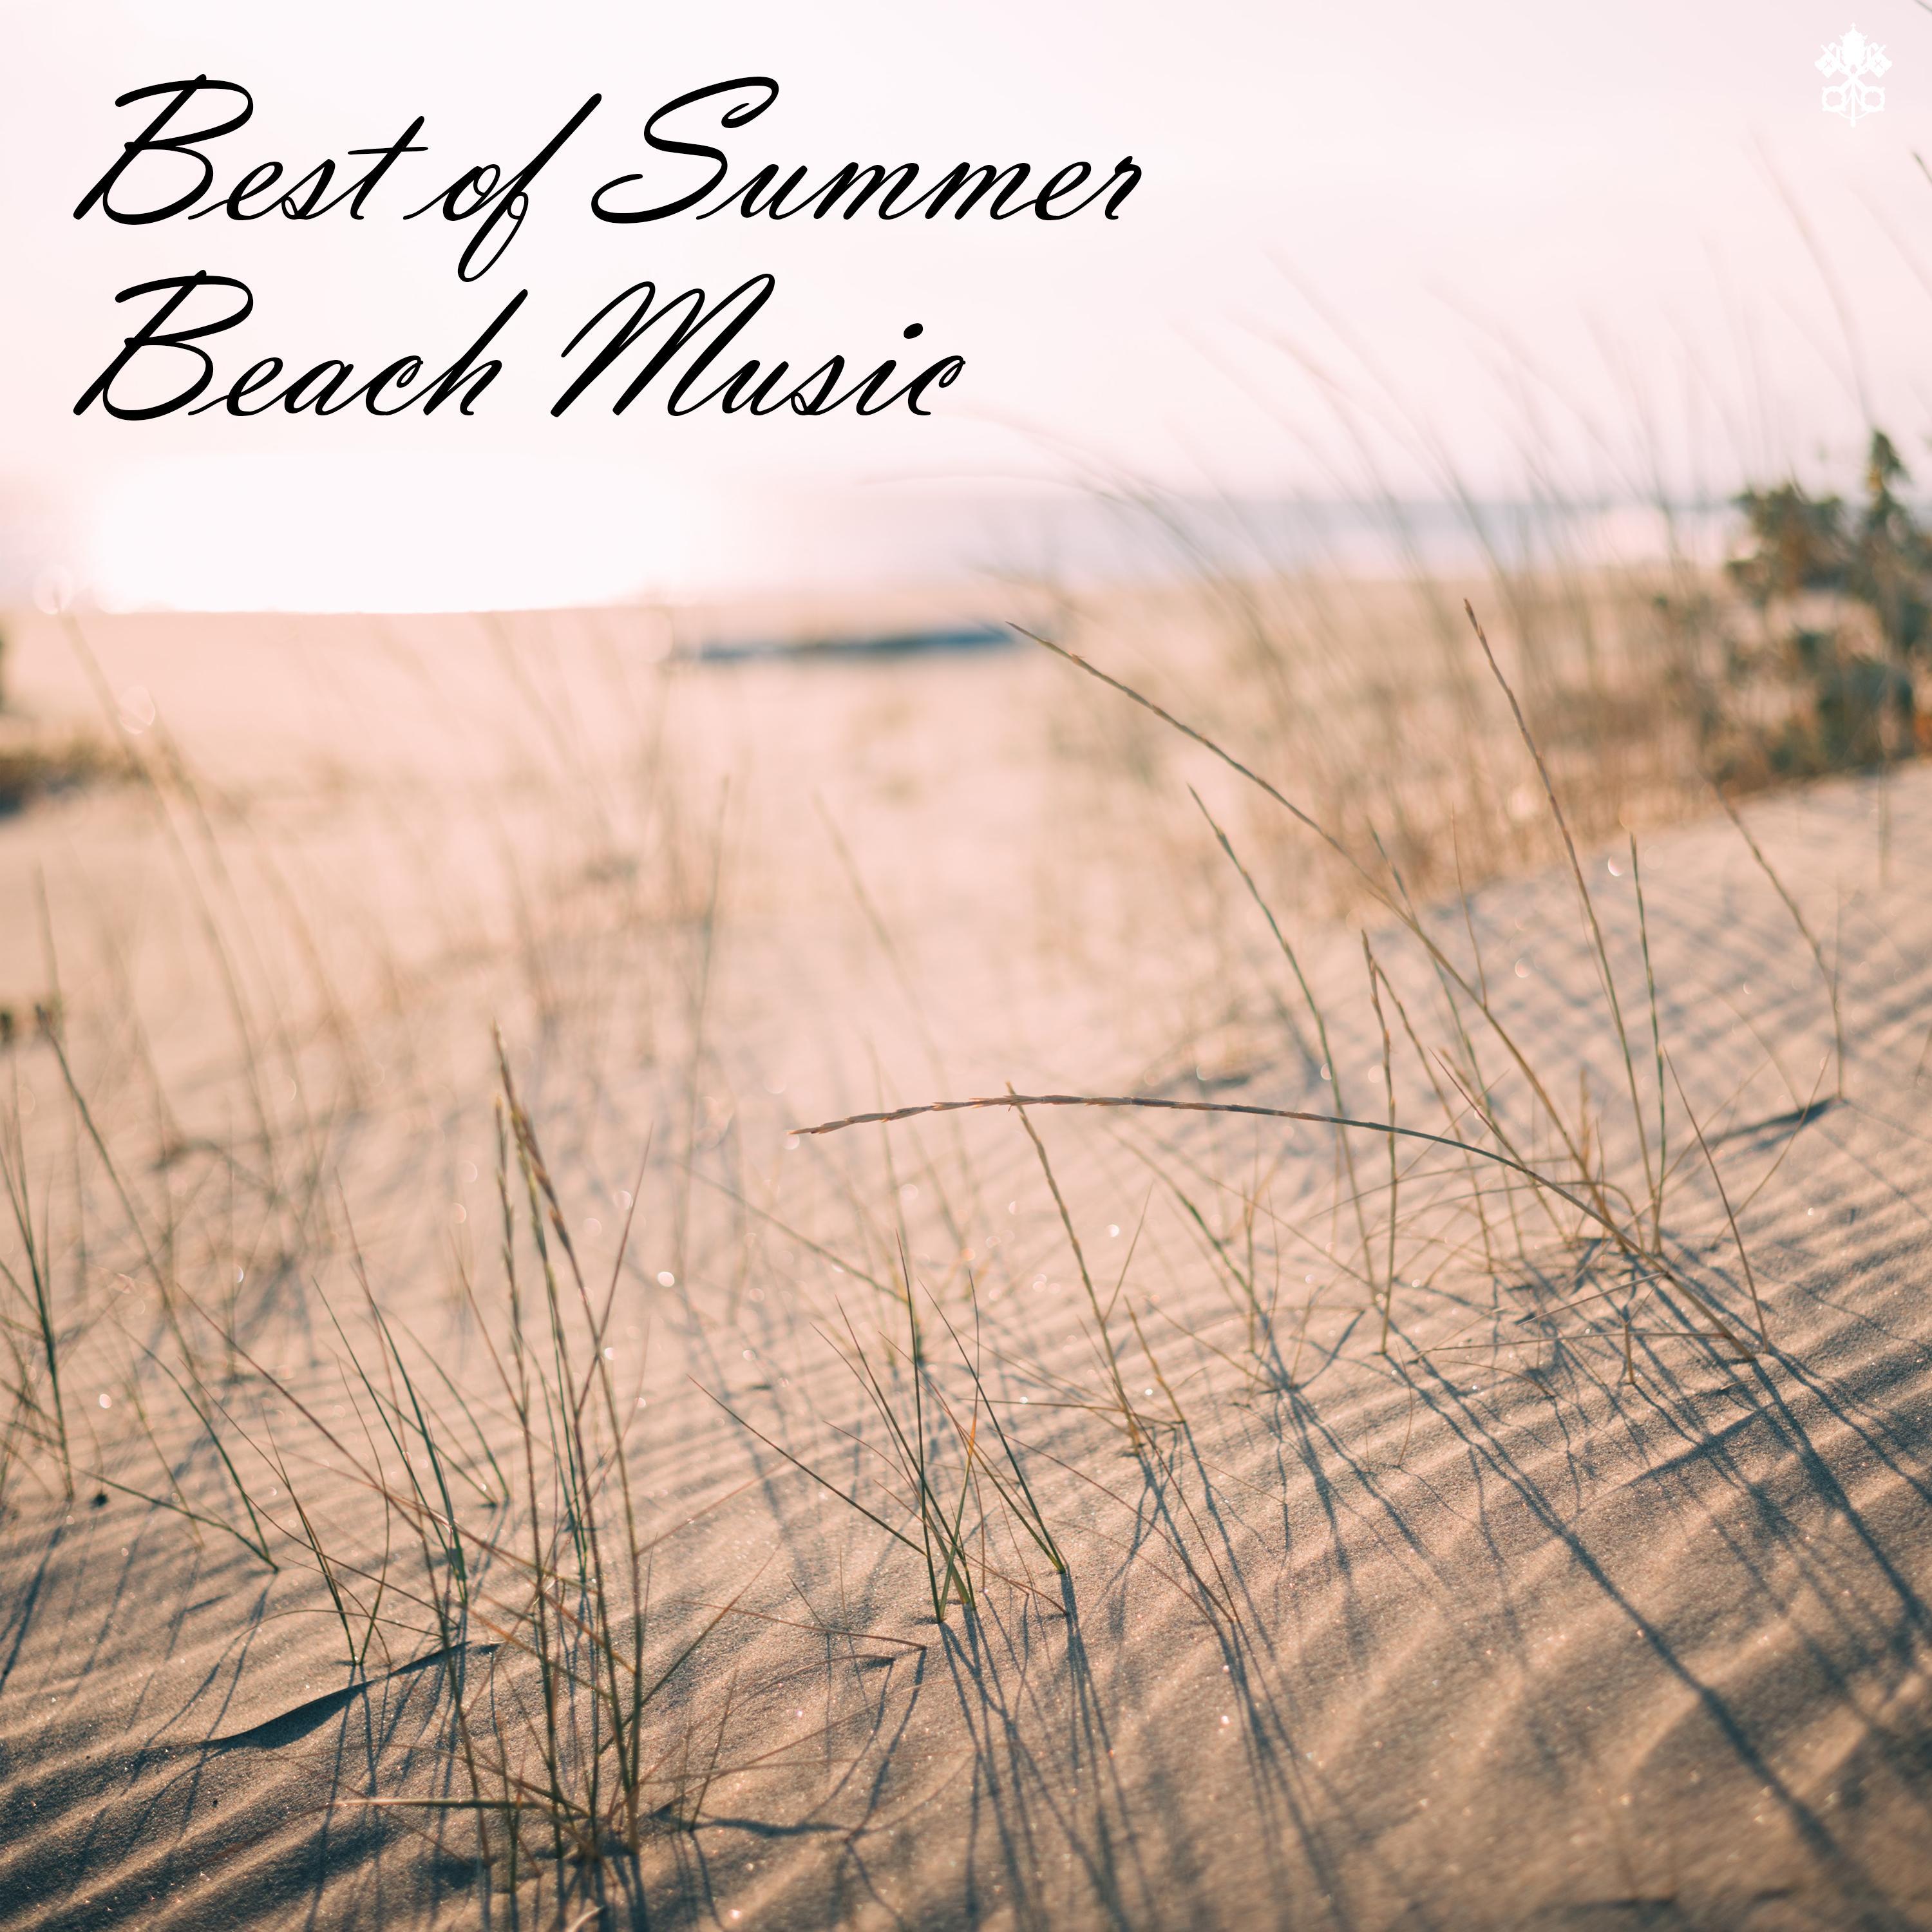 Best of Summer Beach Music